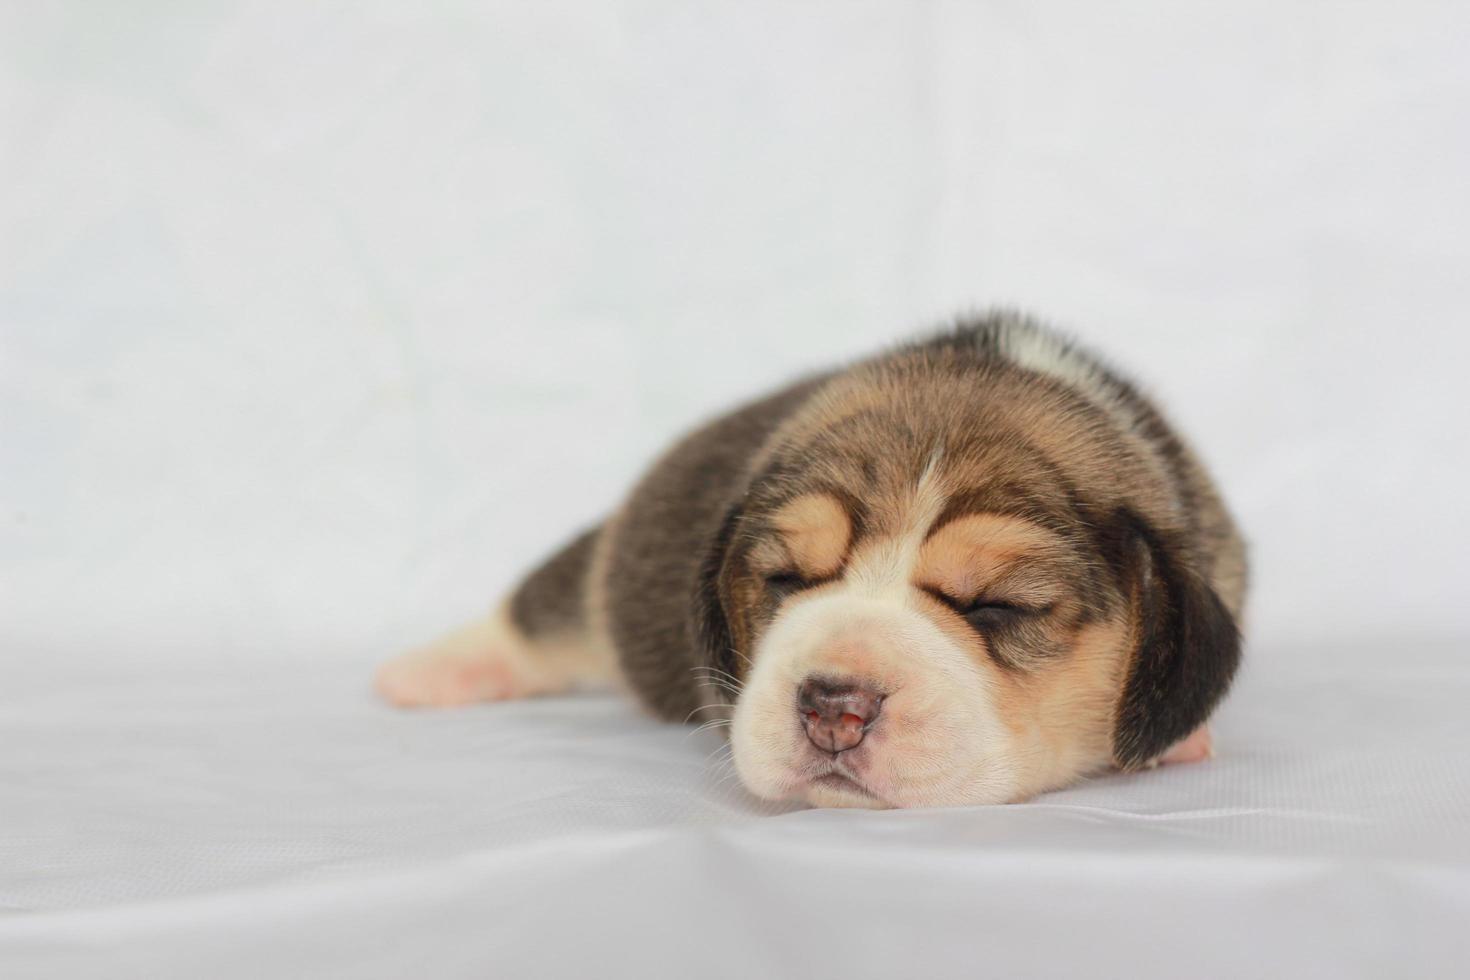 bedårande beagle på vit skärm. beaglar används i en rad forskningsprocedurer. det allmänna utseendet på beagle liknar en miniatyr rävhund. beaglar har utmärkta näsor. foto